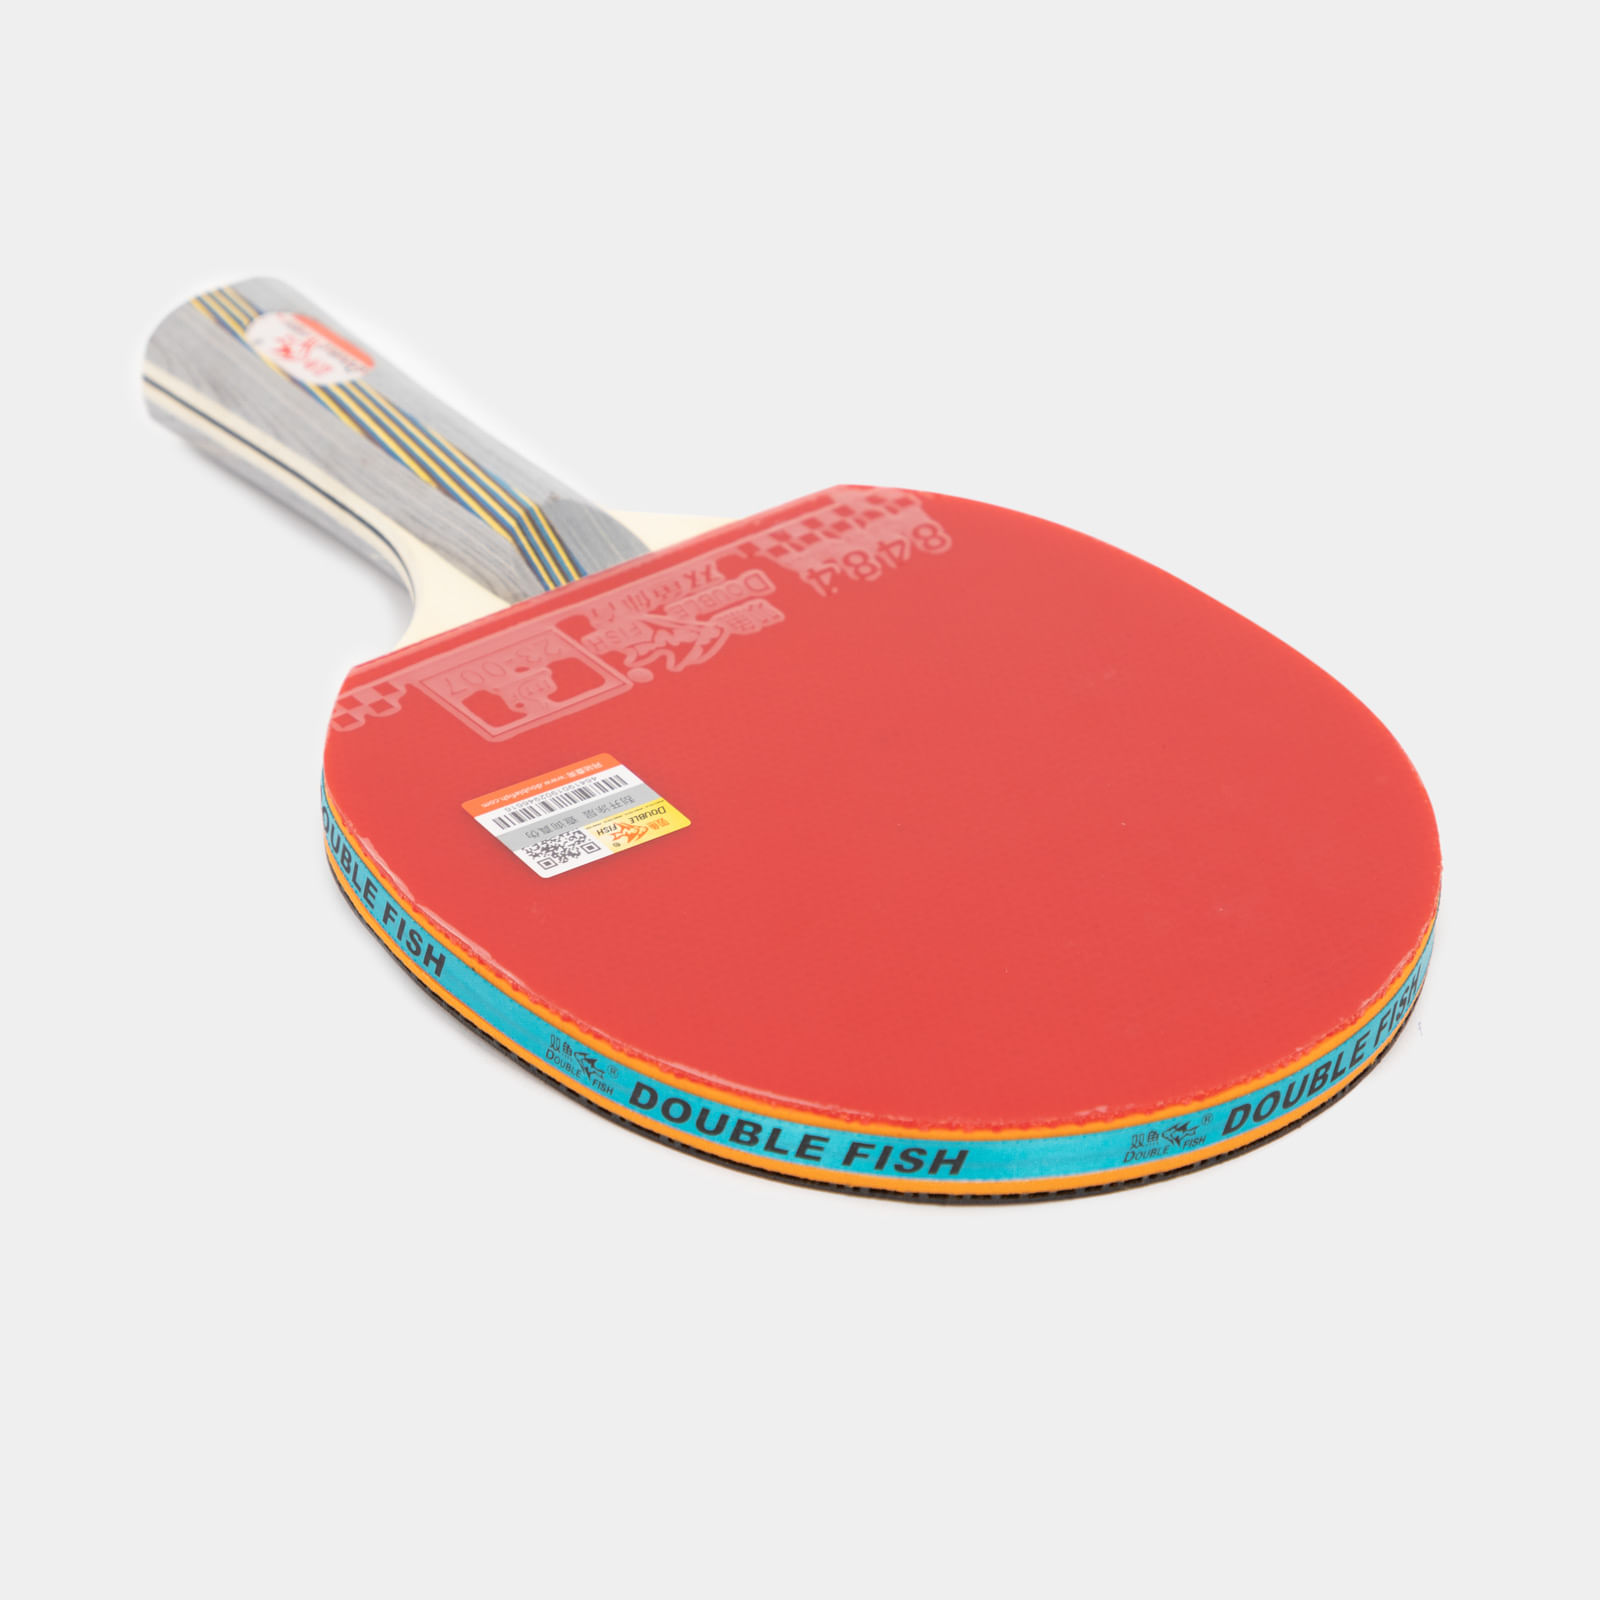 Raqueta de Pong 4D-series